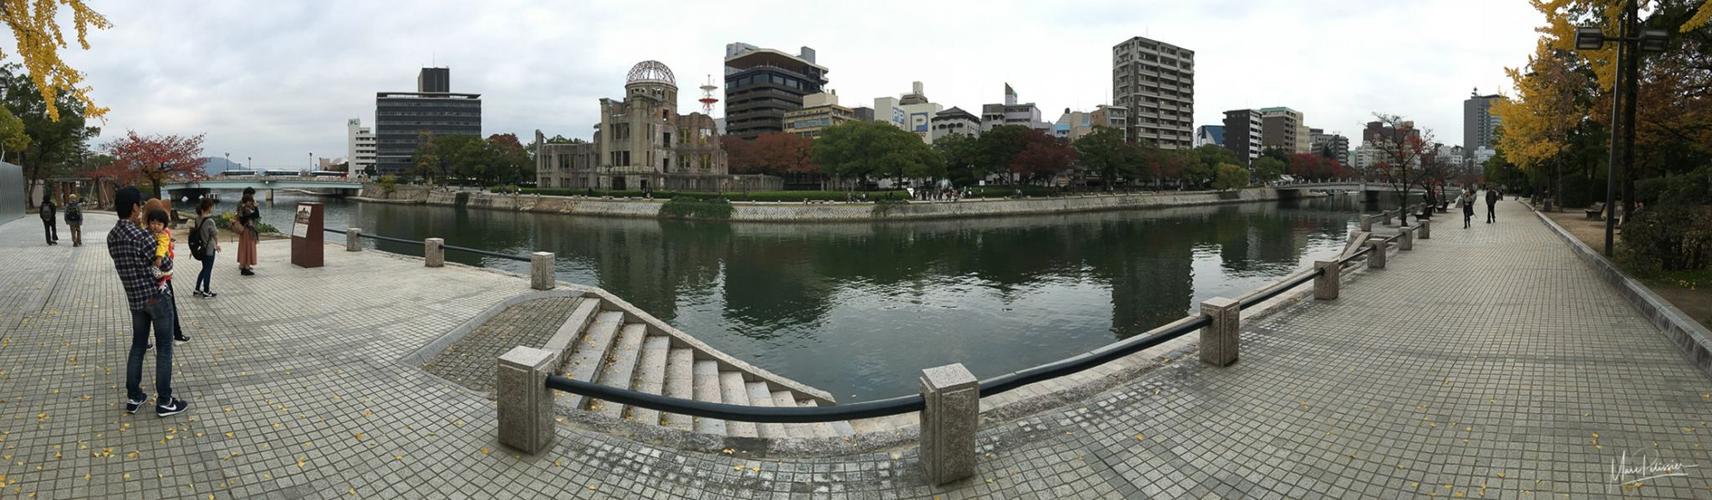 Painting the Peace Memorial Hiroshima